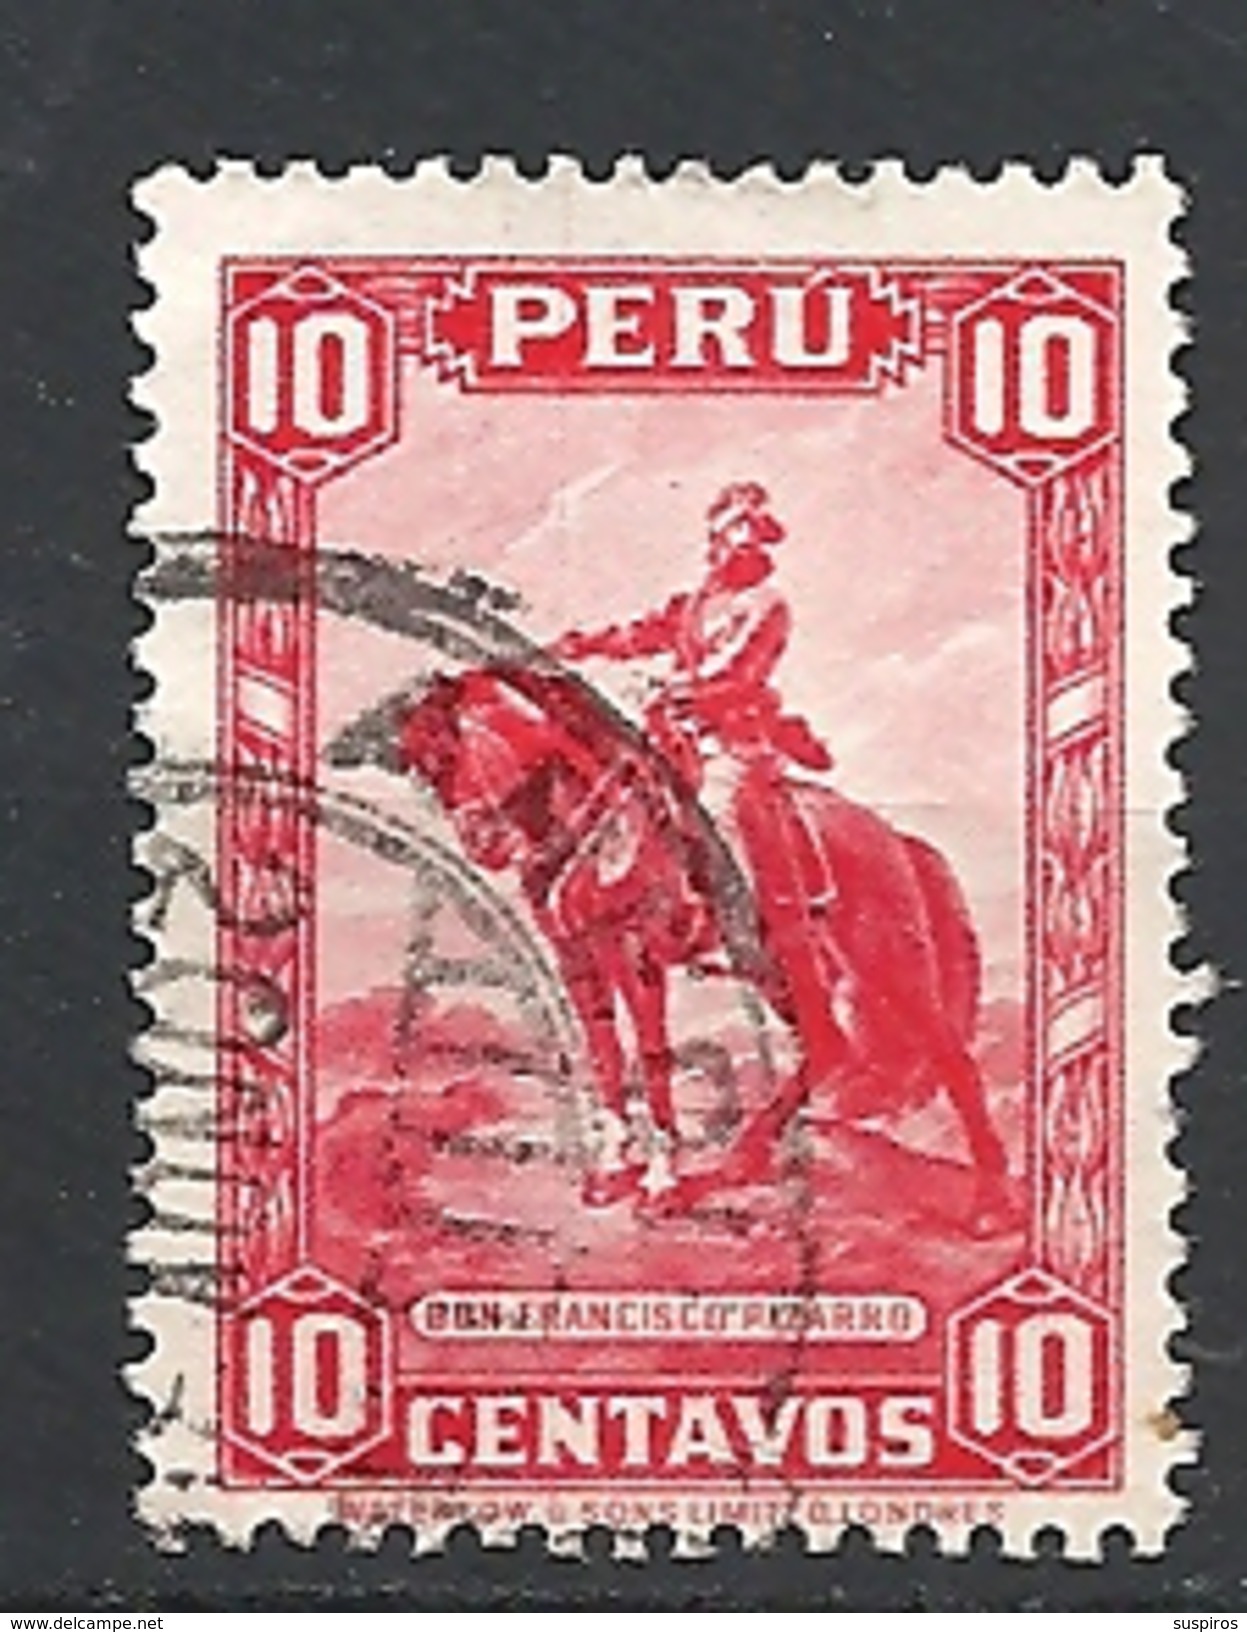 PERU    1934 Postage Stamps      USED  "Francisco Pizzaro" - Painting BY HERNANDEZ - Peru